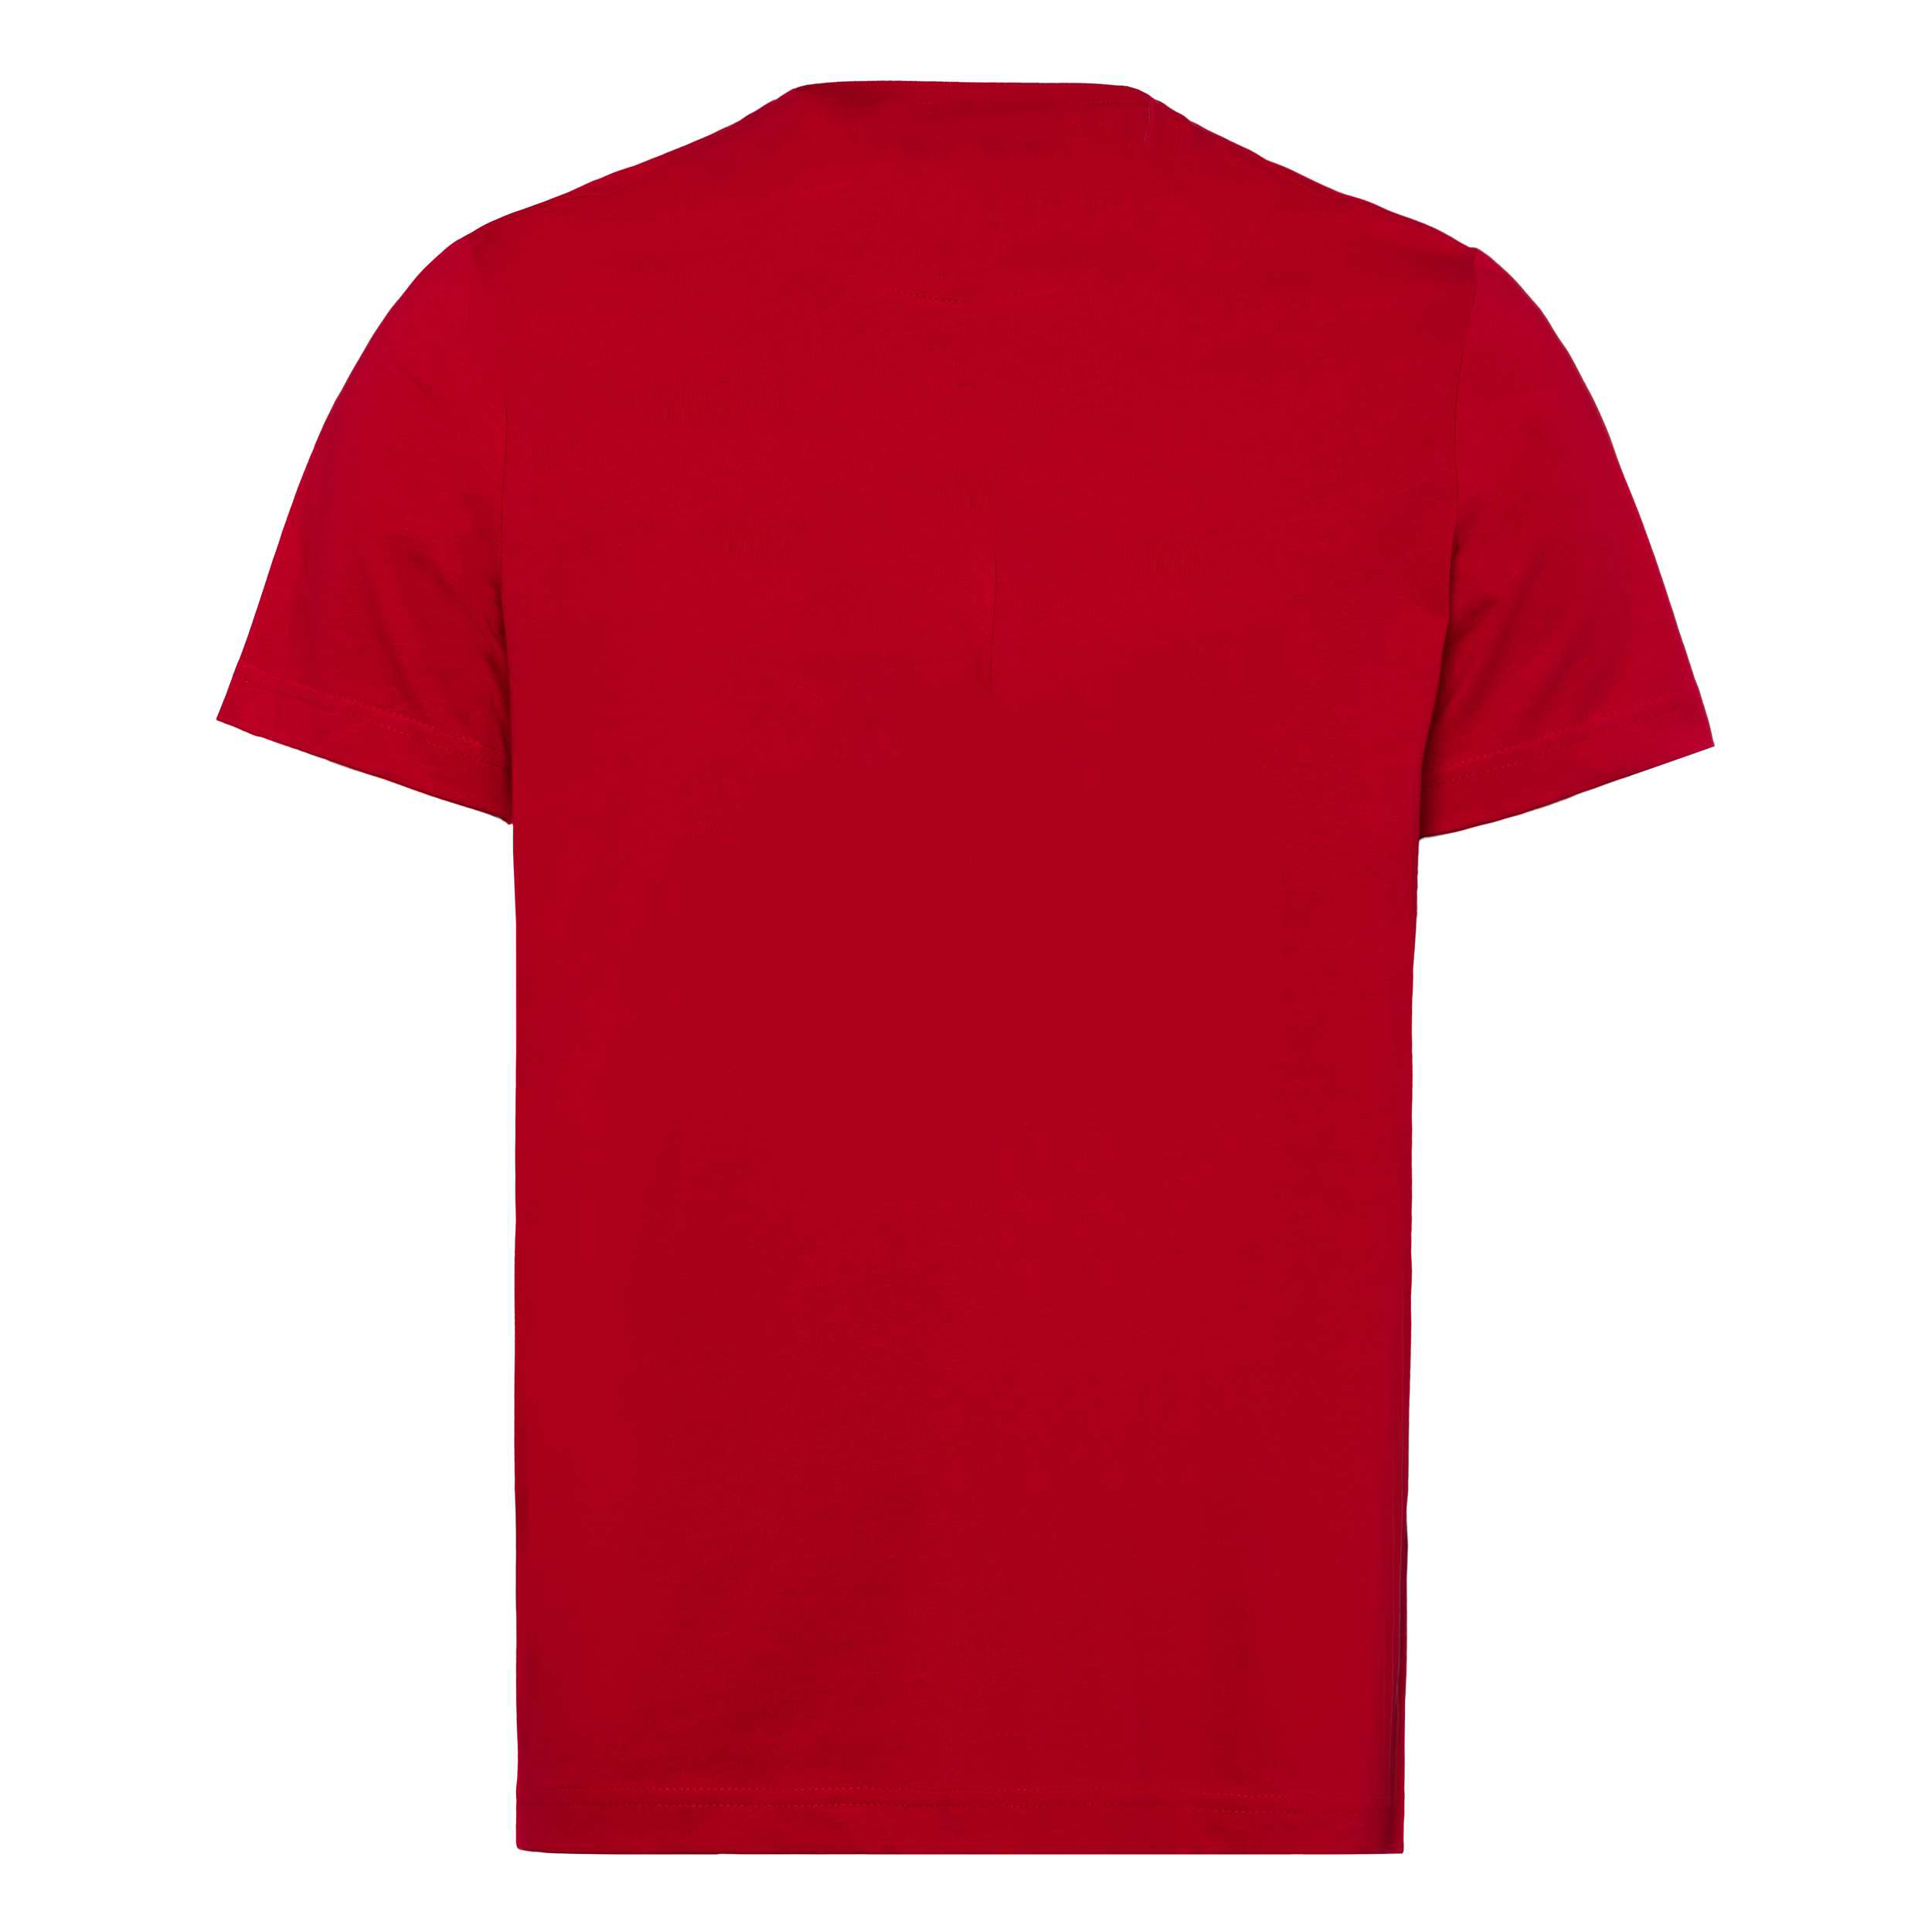 FC Bayern München T-Shirt "Meine Heimat, Mein Verein" - rot